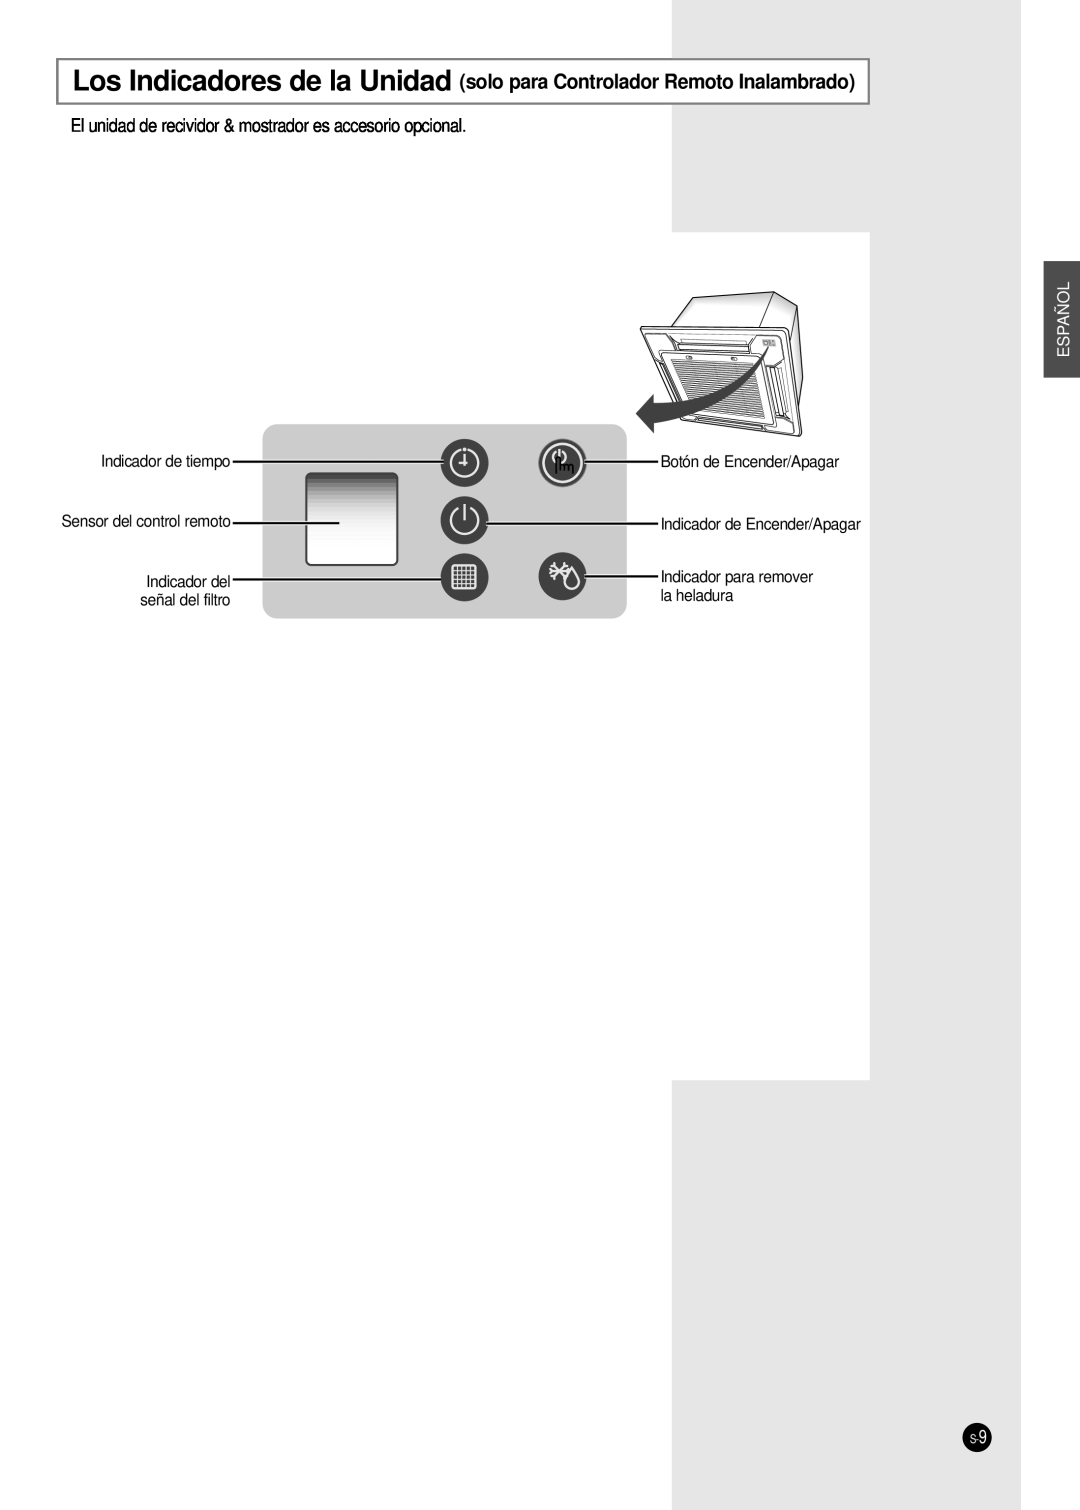 Samsung CH36CAX Indicador de tiempo, Botón de Encender/Apagar, Indicador de Encender/Apagar, Sensor del control remoto 